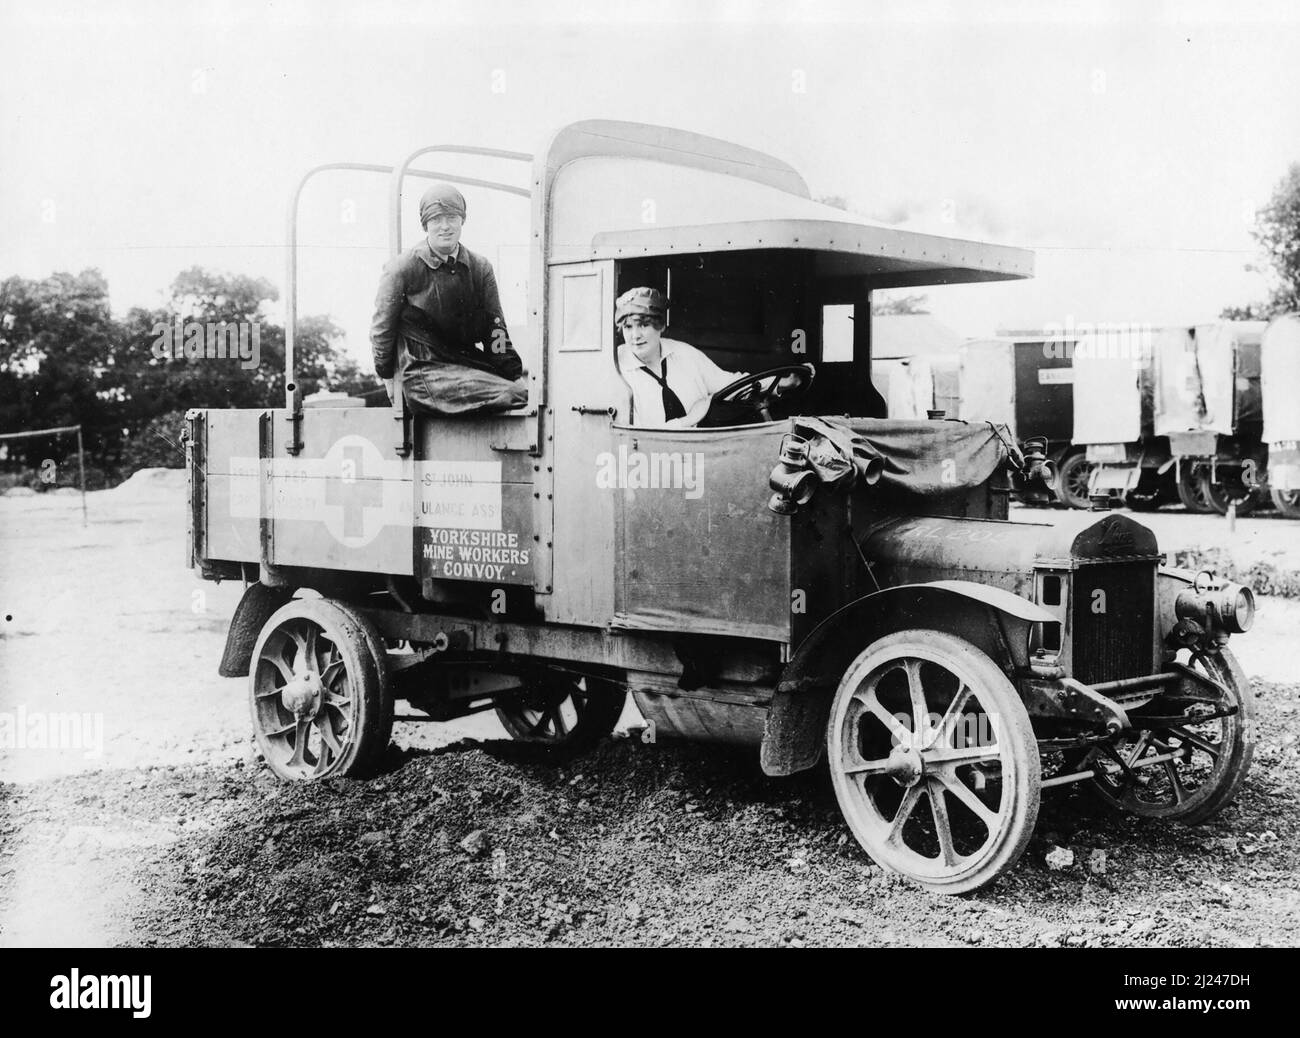 Deux servante de camion de la Croix-Rouge britannique VAD (détachement d'aide volontaire) avec leur véhicule, un camion Vulcan, en WW1 Banque D'Images